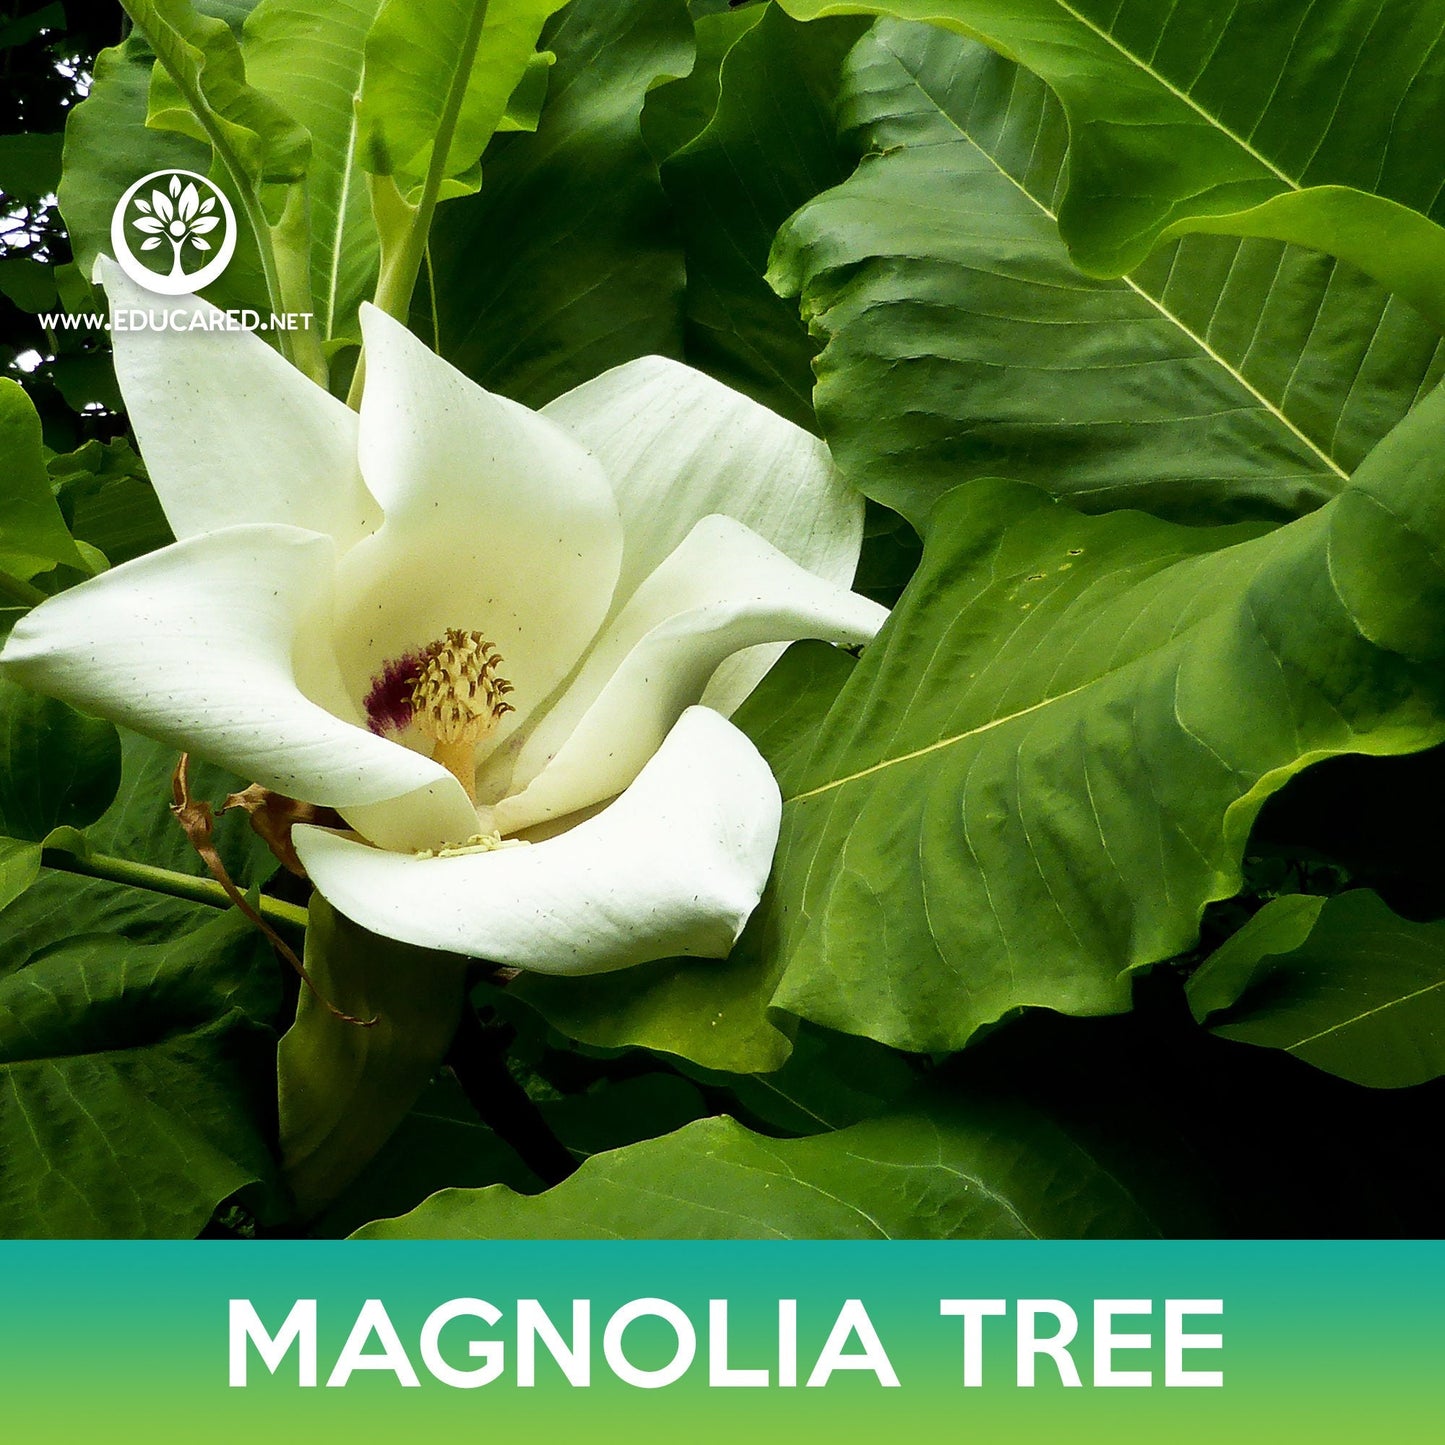 Magnolia Tree Seeds, Magnolia ashei